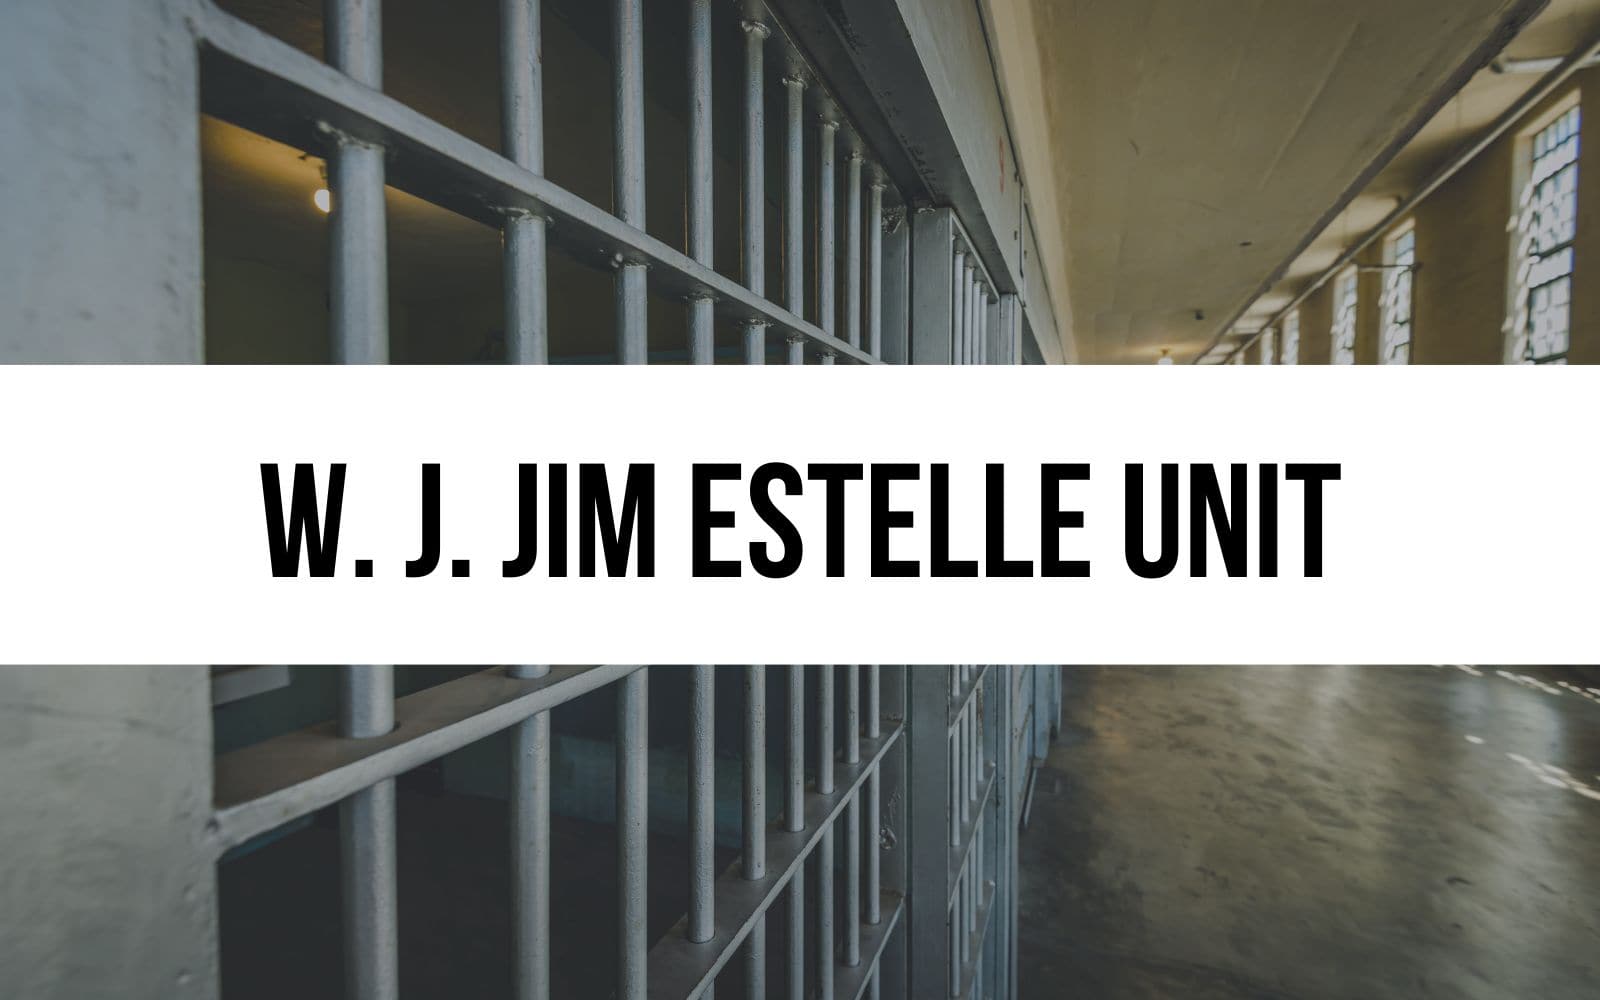 W. J. Jim Estelle Unit